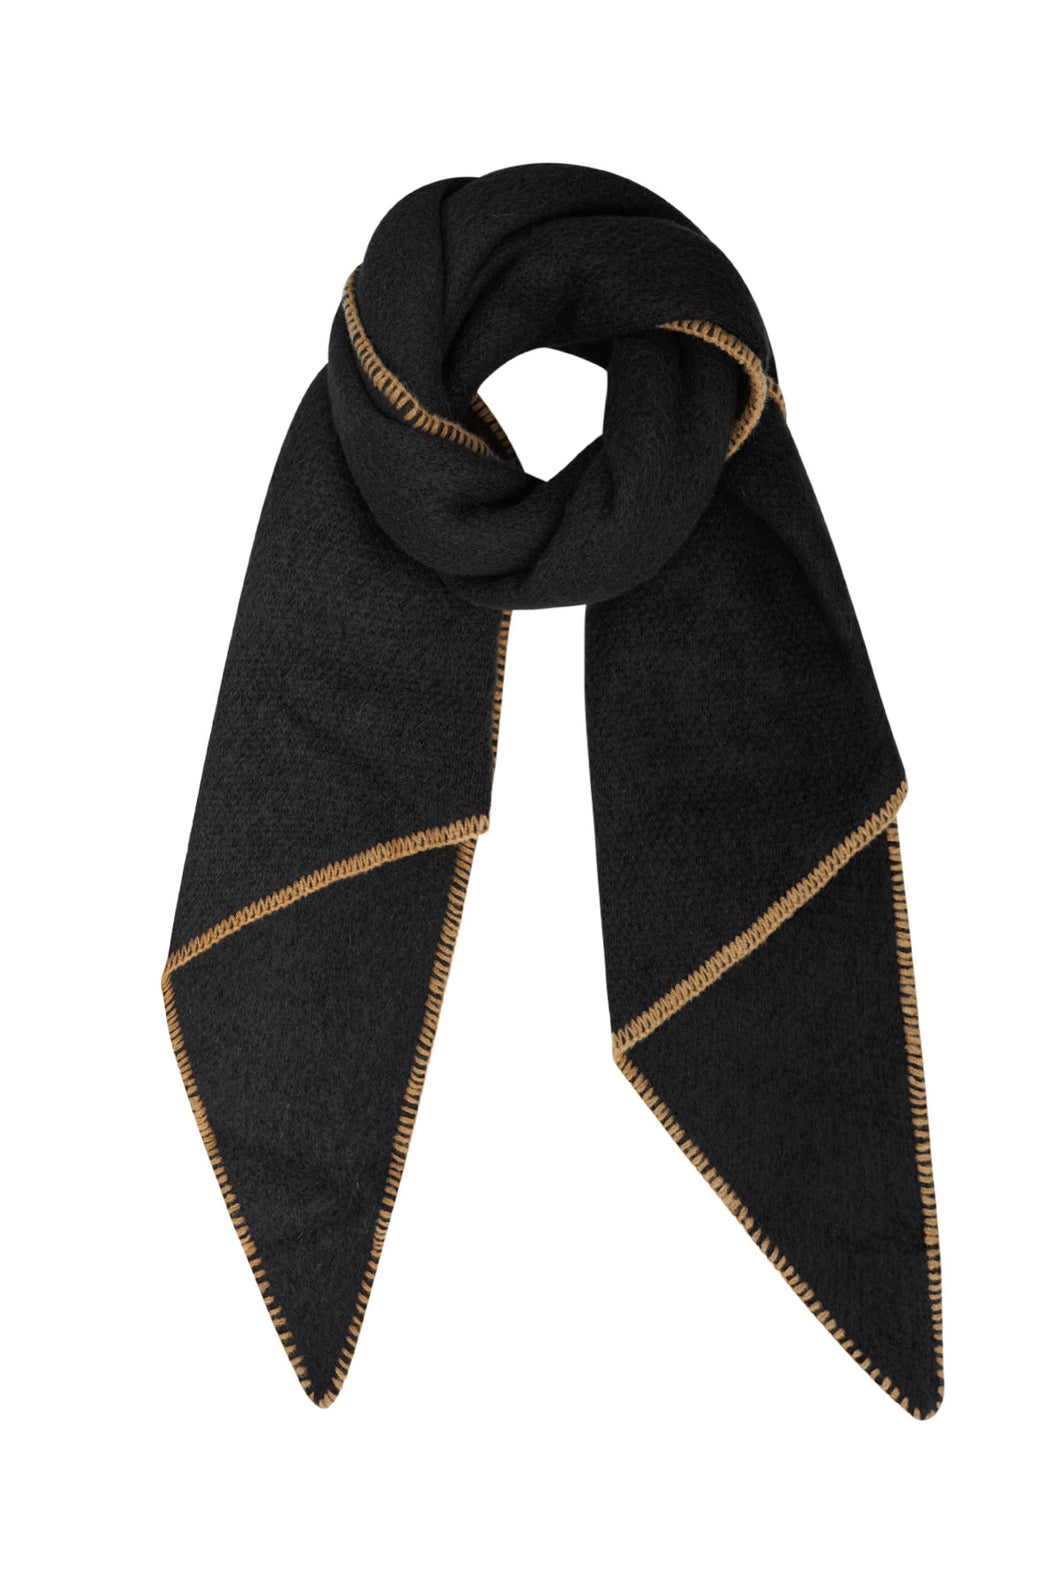 Zwarte Sjaal met bruine stiksels. Warm en cosy, perfect voor aankomend seizoen. De sjaal is groot waardoor je de sjaal op meerdere manieren kunt dragen. Deze trendy sjaal is lekker zacht en gemaakt van acryl en is verkrijgbaar in verschillende kleuren, roze, wit, zwart en beige/taupe. Lengte van de sjaal is 180cm x 50cm.